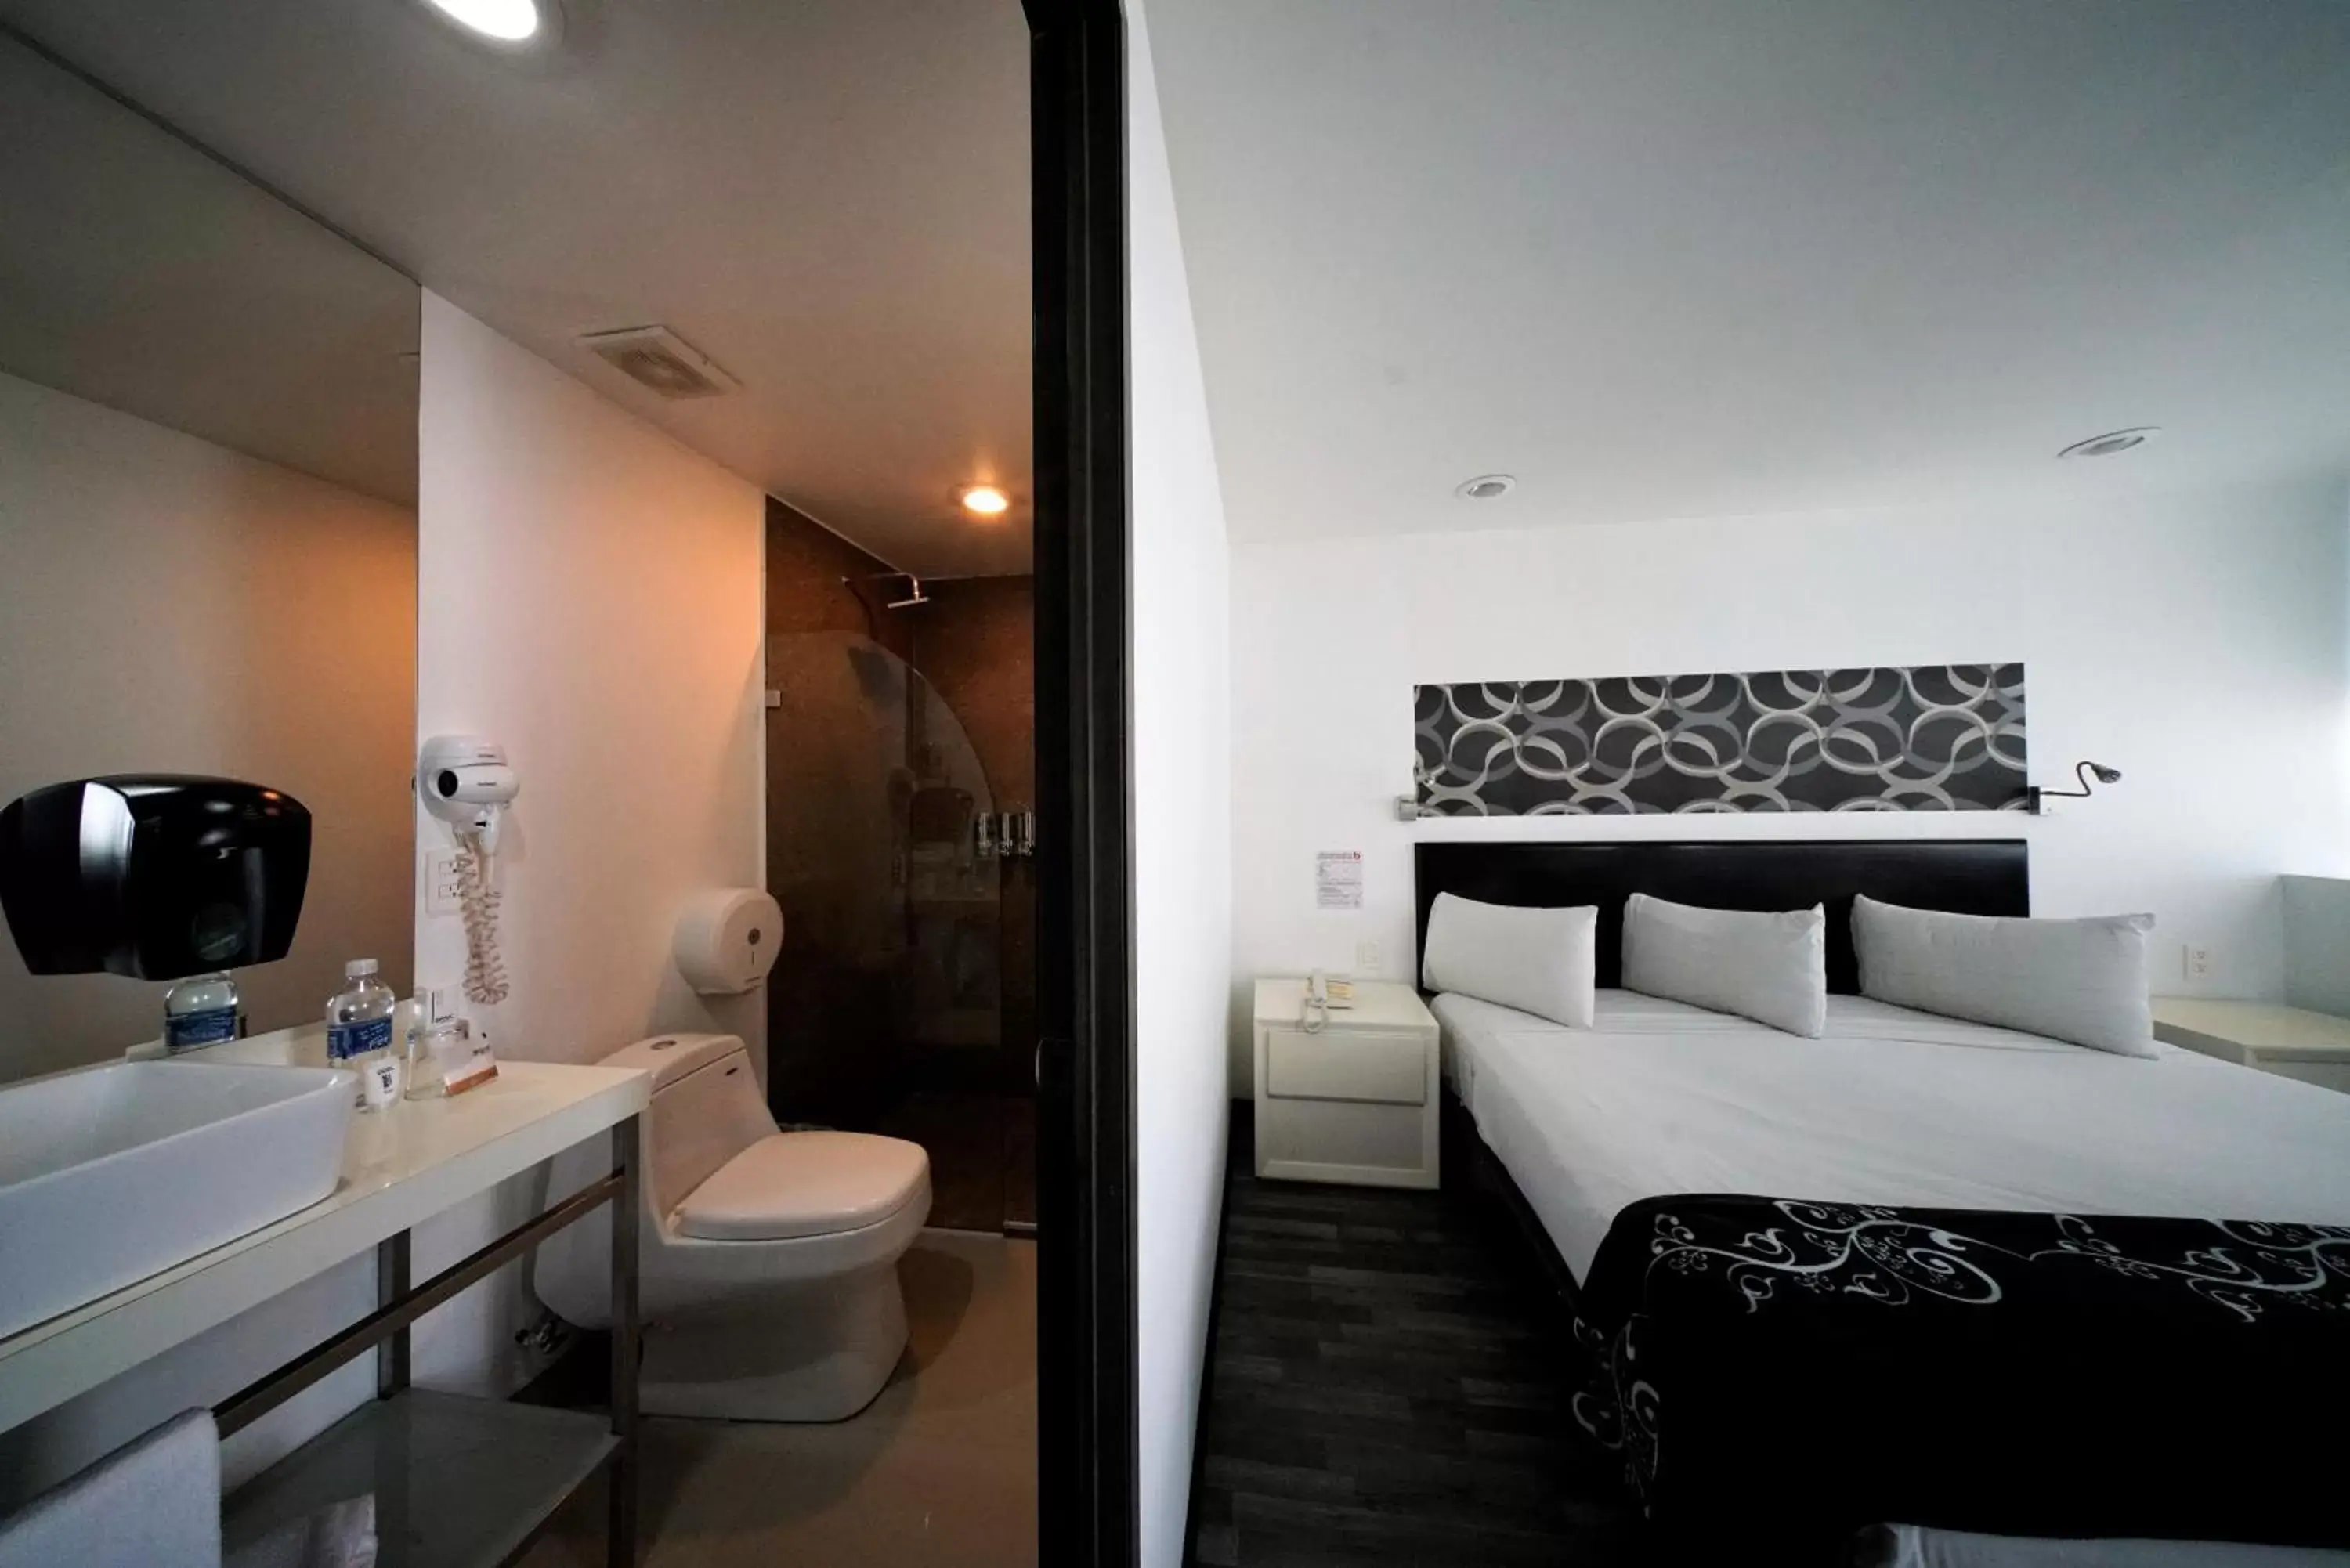 Bedroom, Bathroom in Hotel Black Mexico City